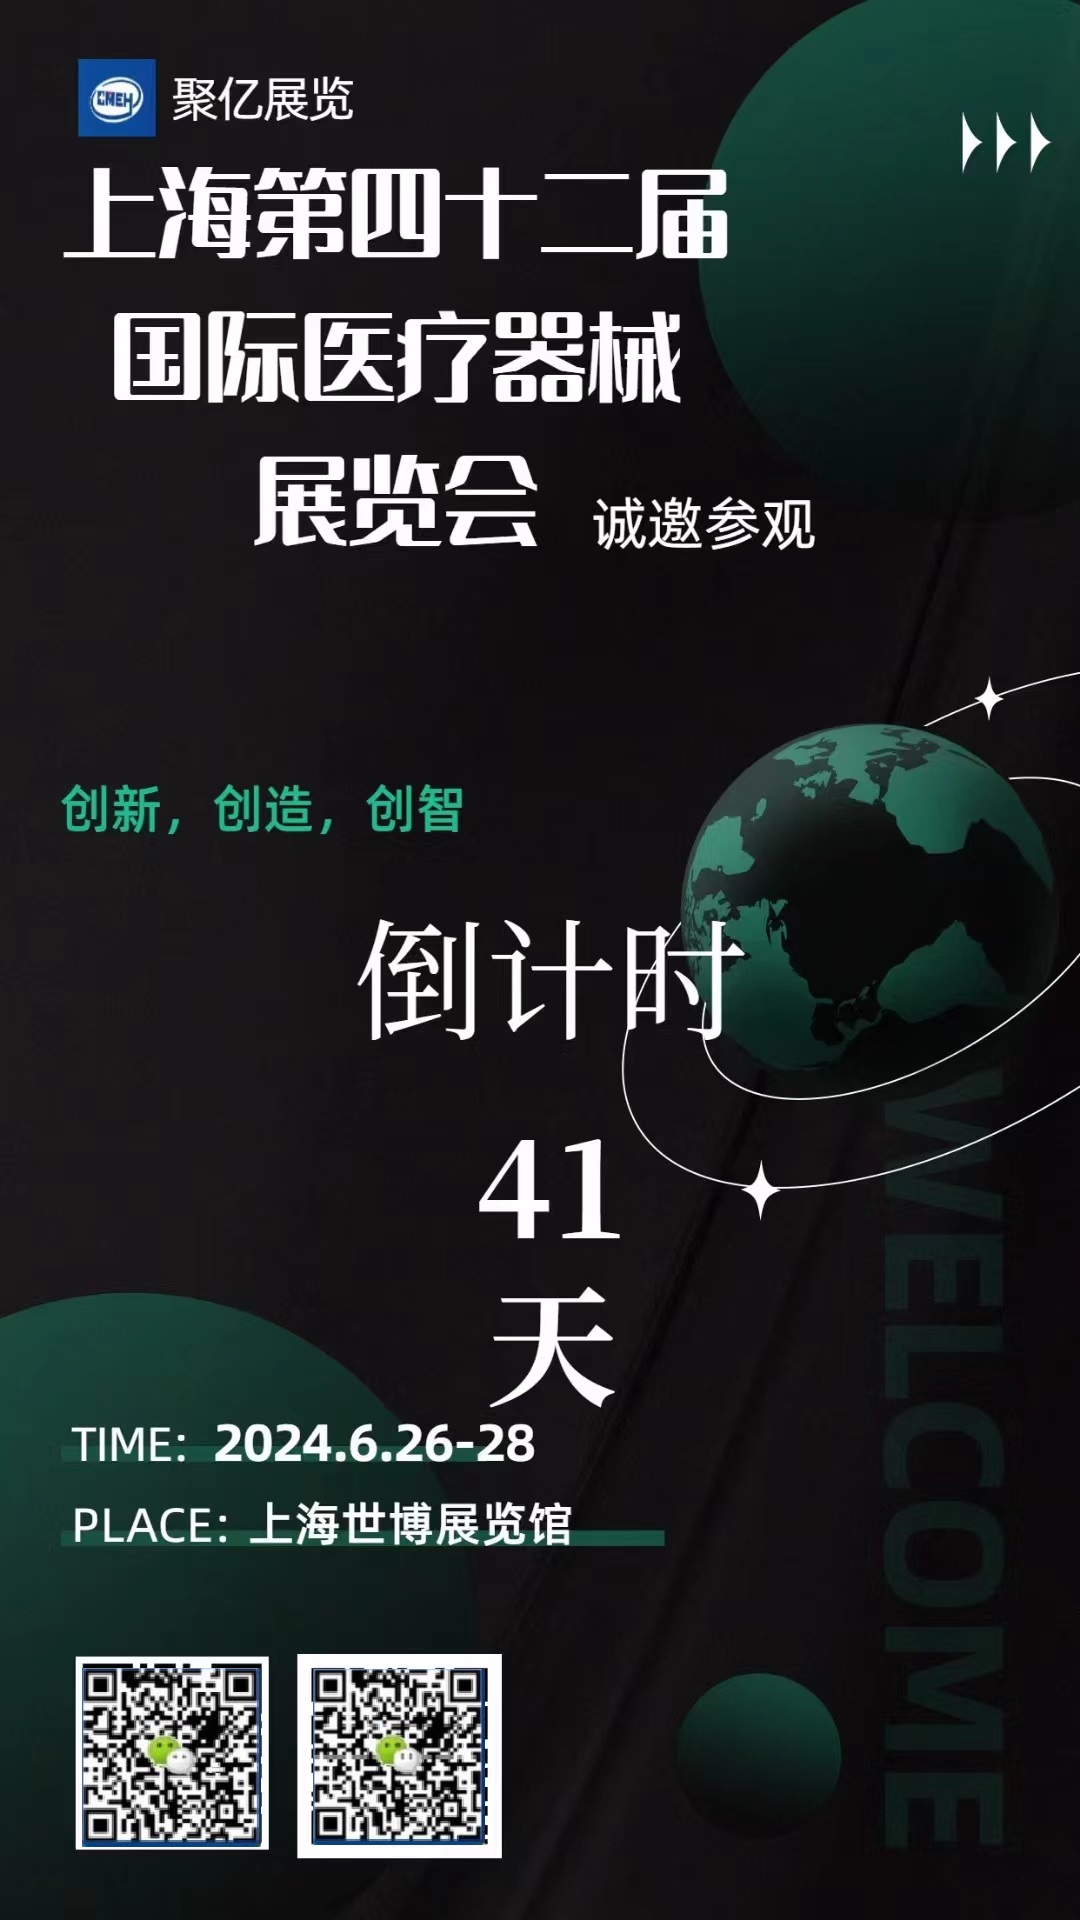 上海国际医疗器械展览会倒计时41天